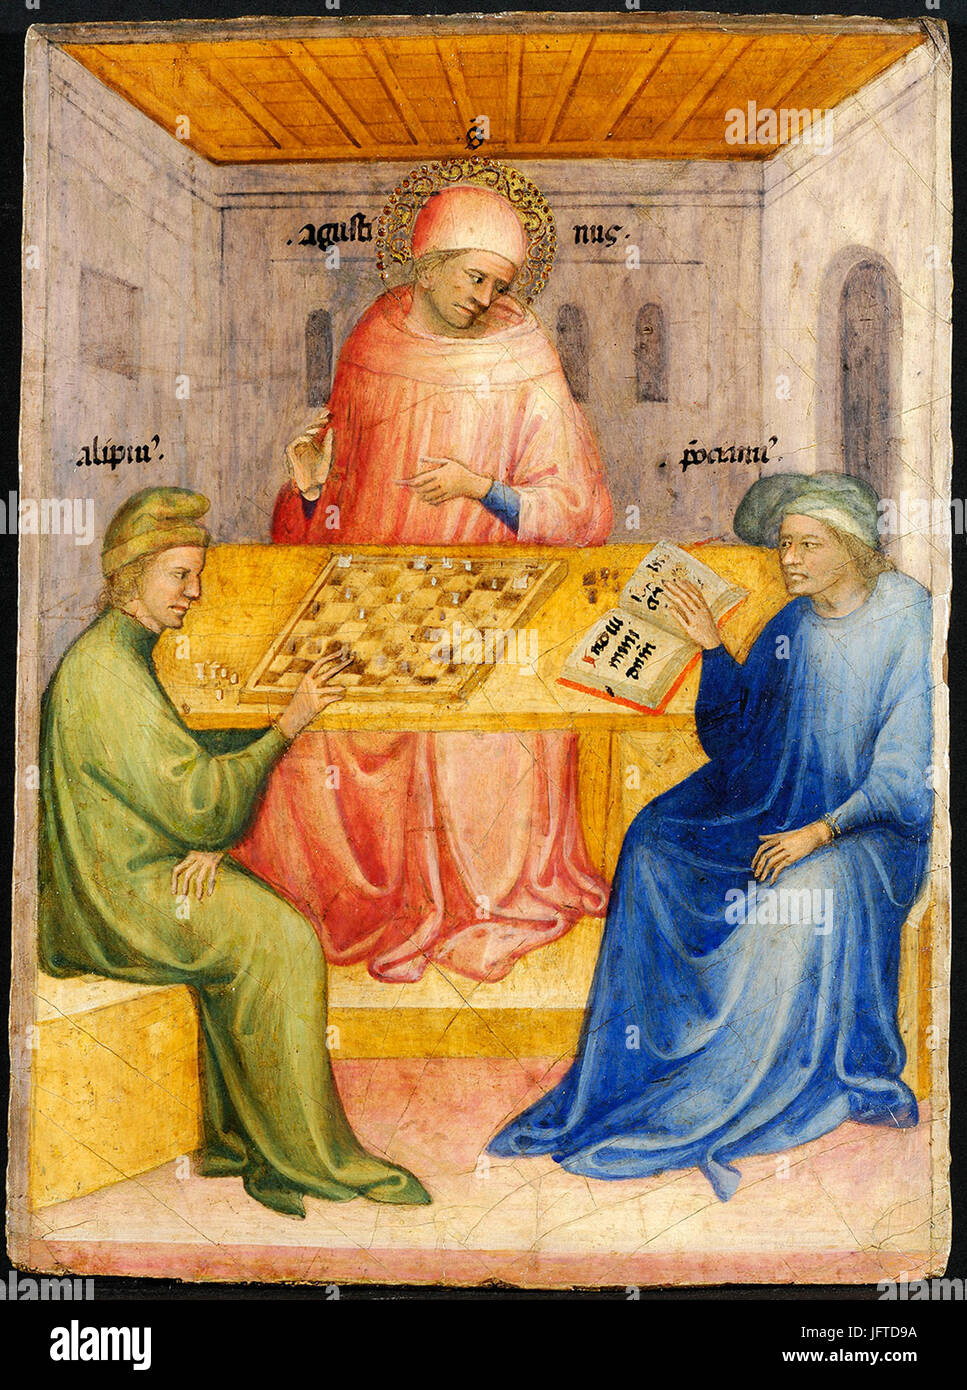 11 Nicolo di Pietro. Saint Augustin et Alypius reçoivent la visite de Ponticianus 1413-15 Musée des Beaux-Arts, Lyon Stock Photo